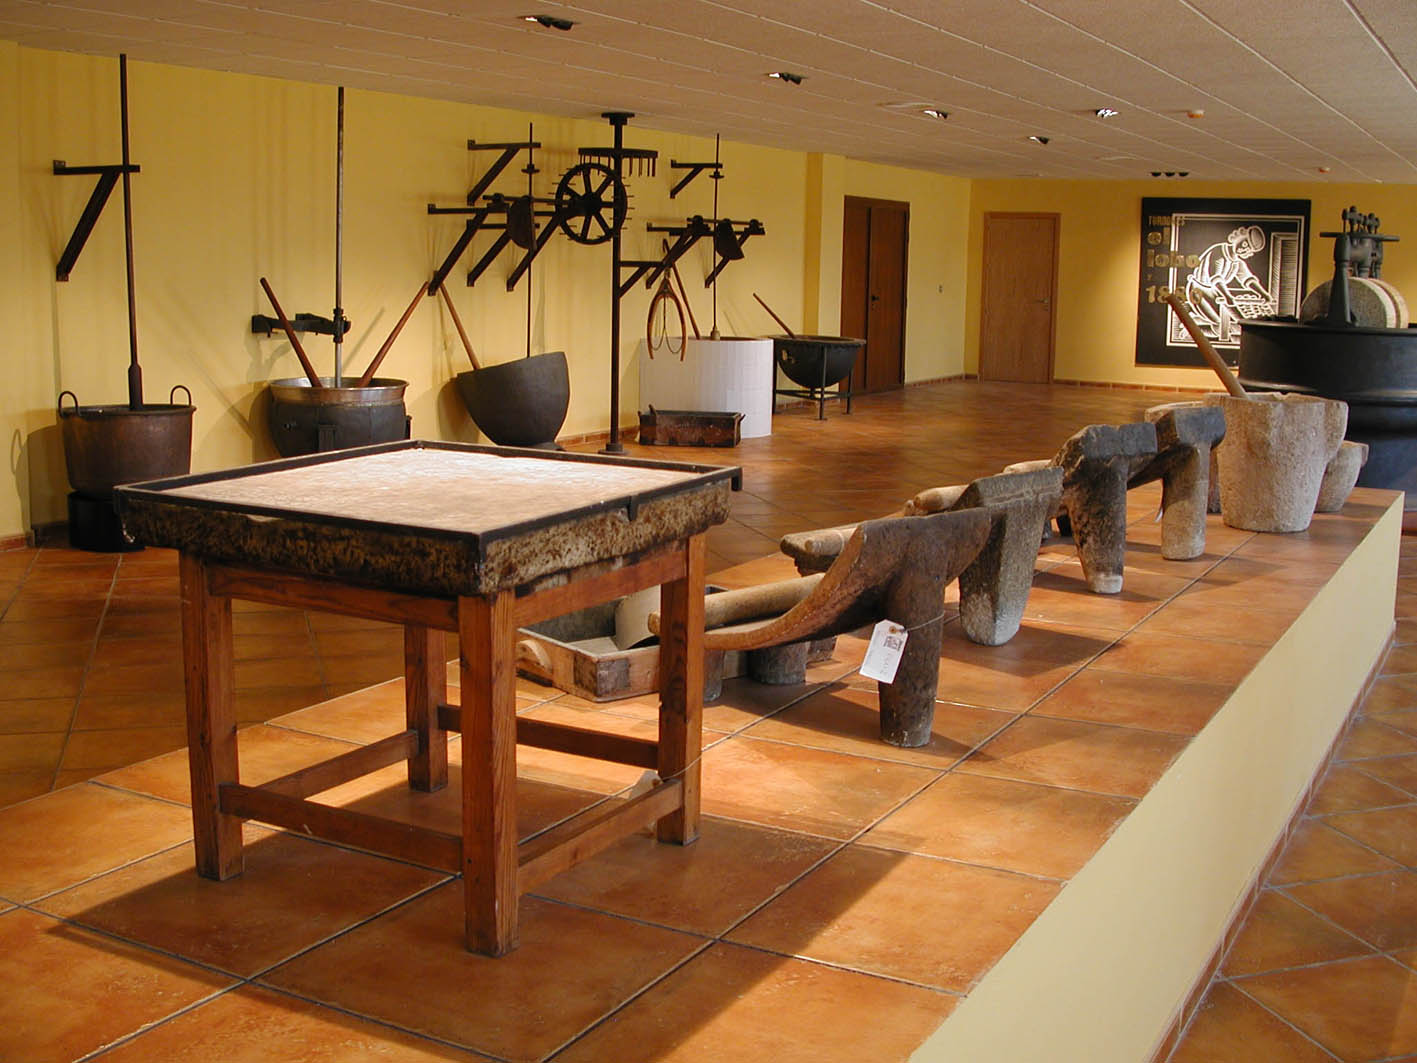 Museu del Torró